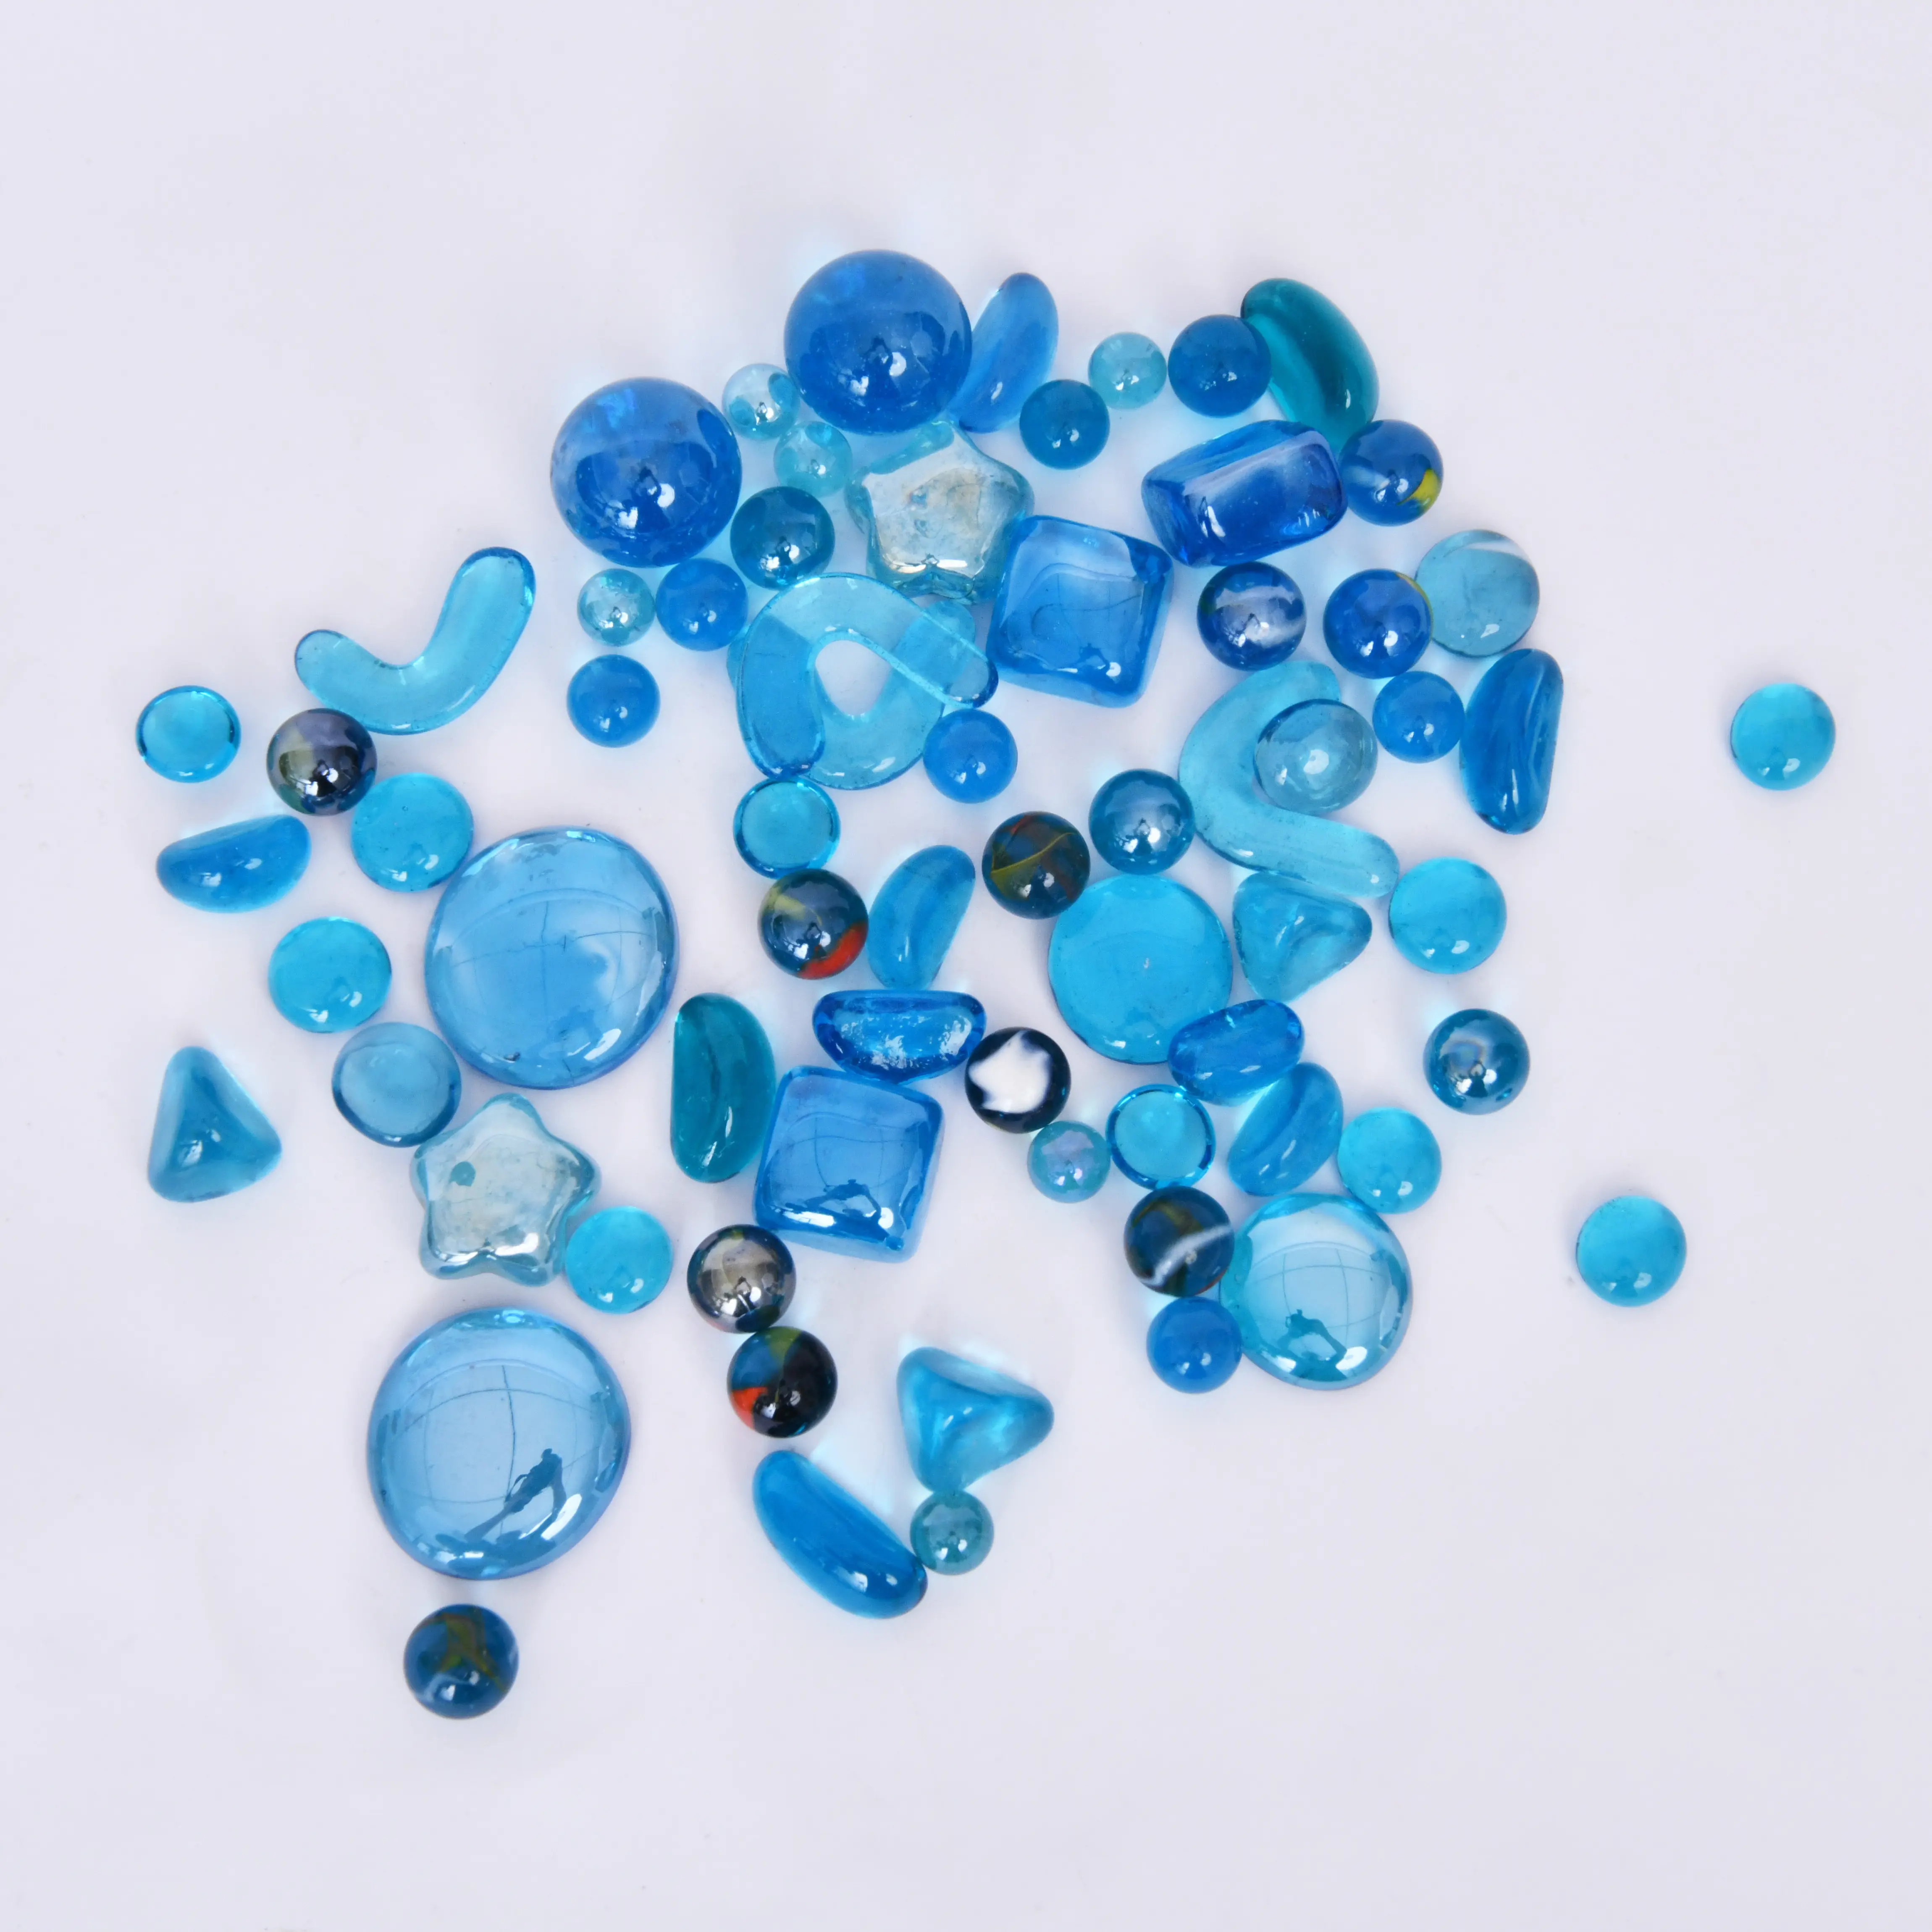 زجاج مستوٍ الرخام ، مختلط اللون الأزرق الزجاج الخرز الحجر ، والأحجار الكريمة الحصى الحوض زهرية حشو ديكور